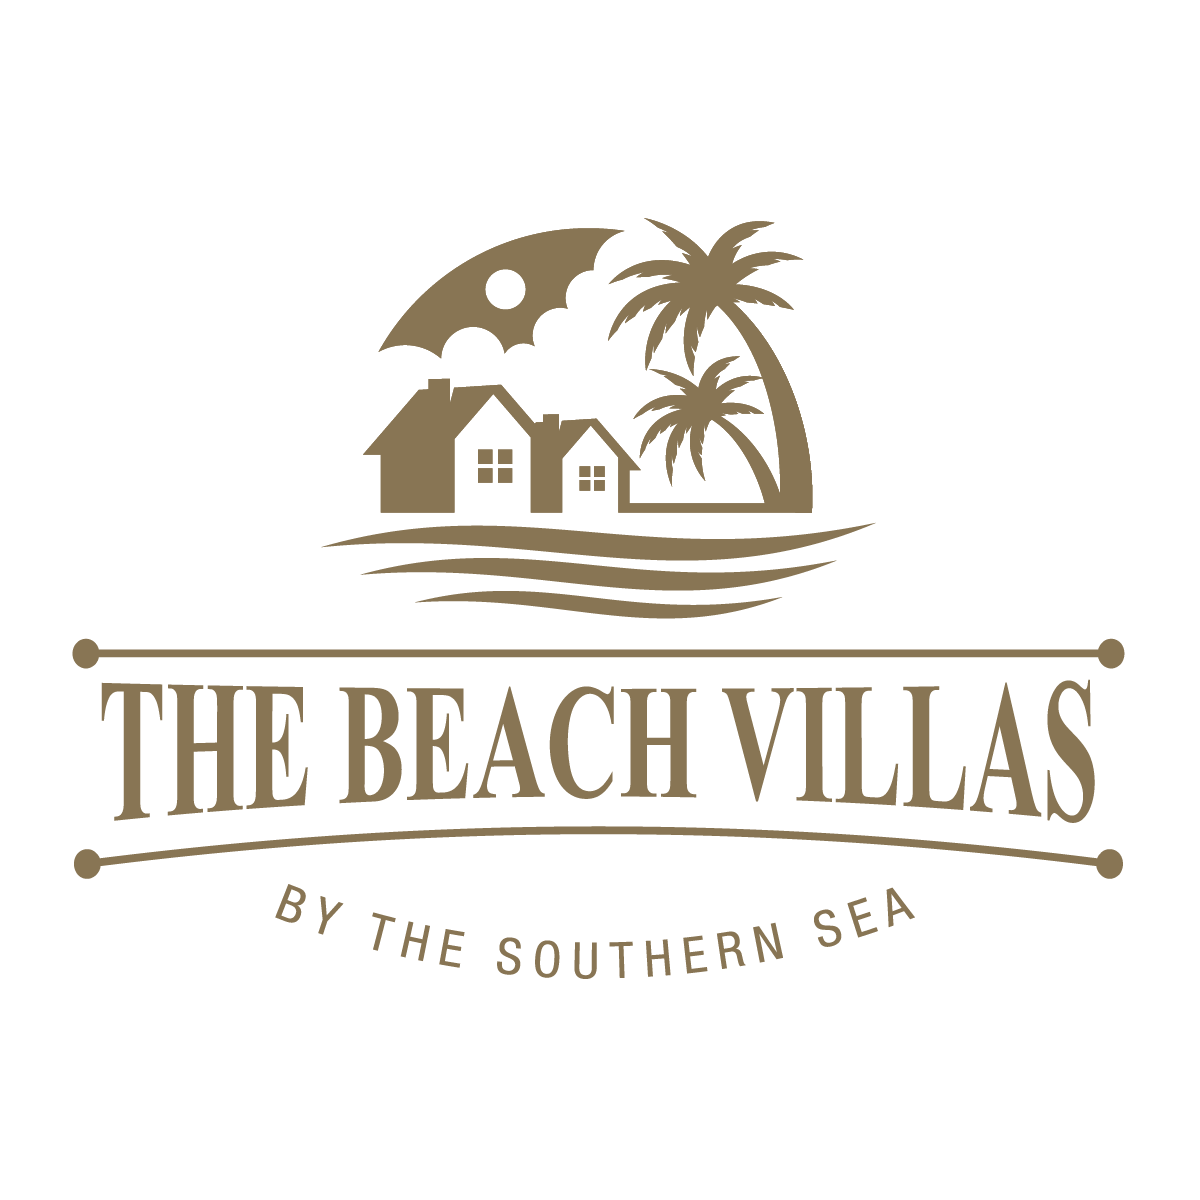 the_beach_villas_logo_1200